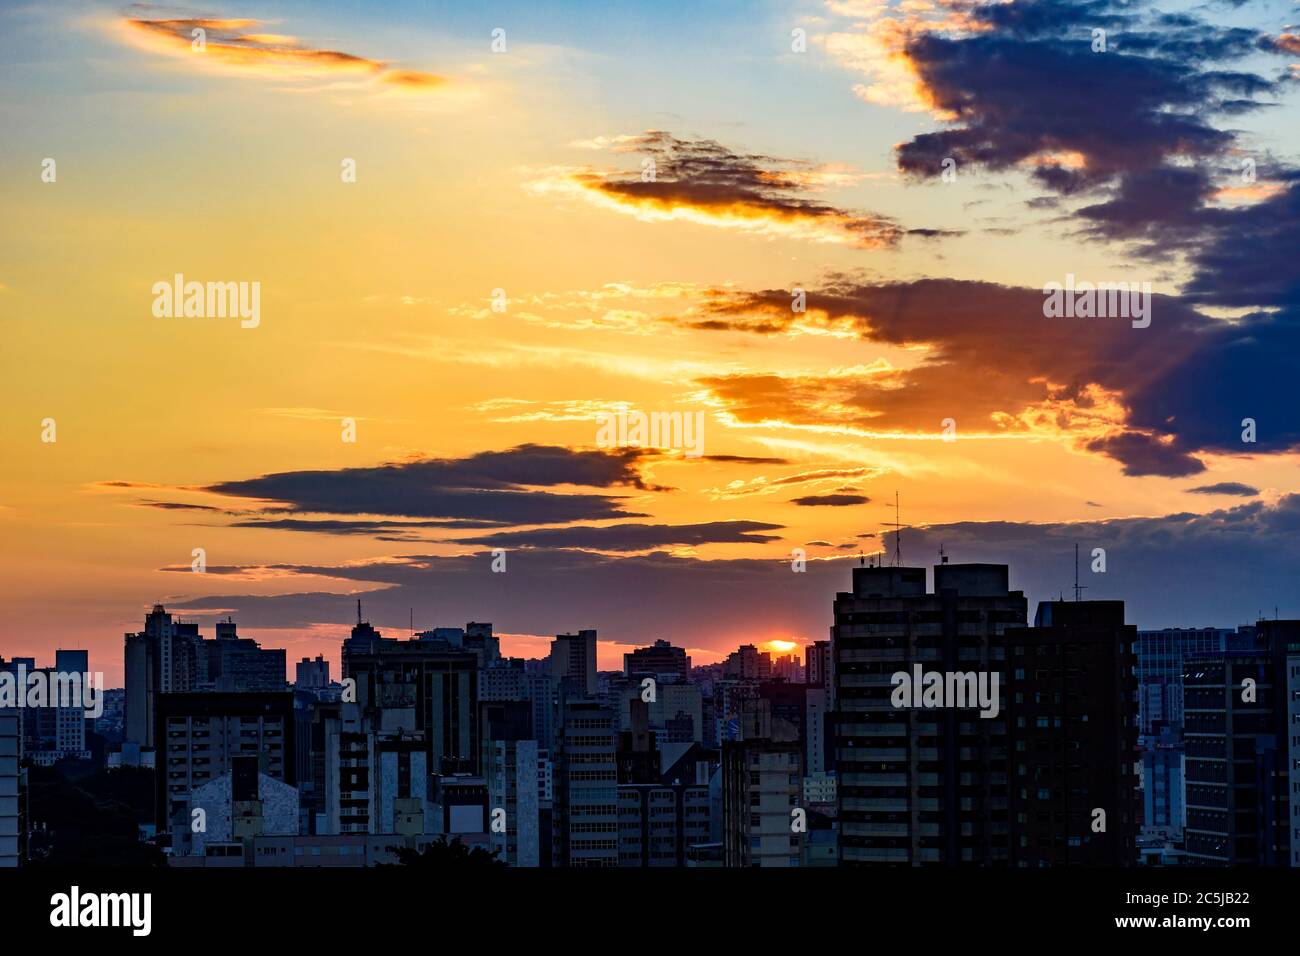 Vista urbana della città di Belo Horizonte in Minas Gerais al tramonto con i suoi edifici e le luci Foto Stock